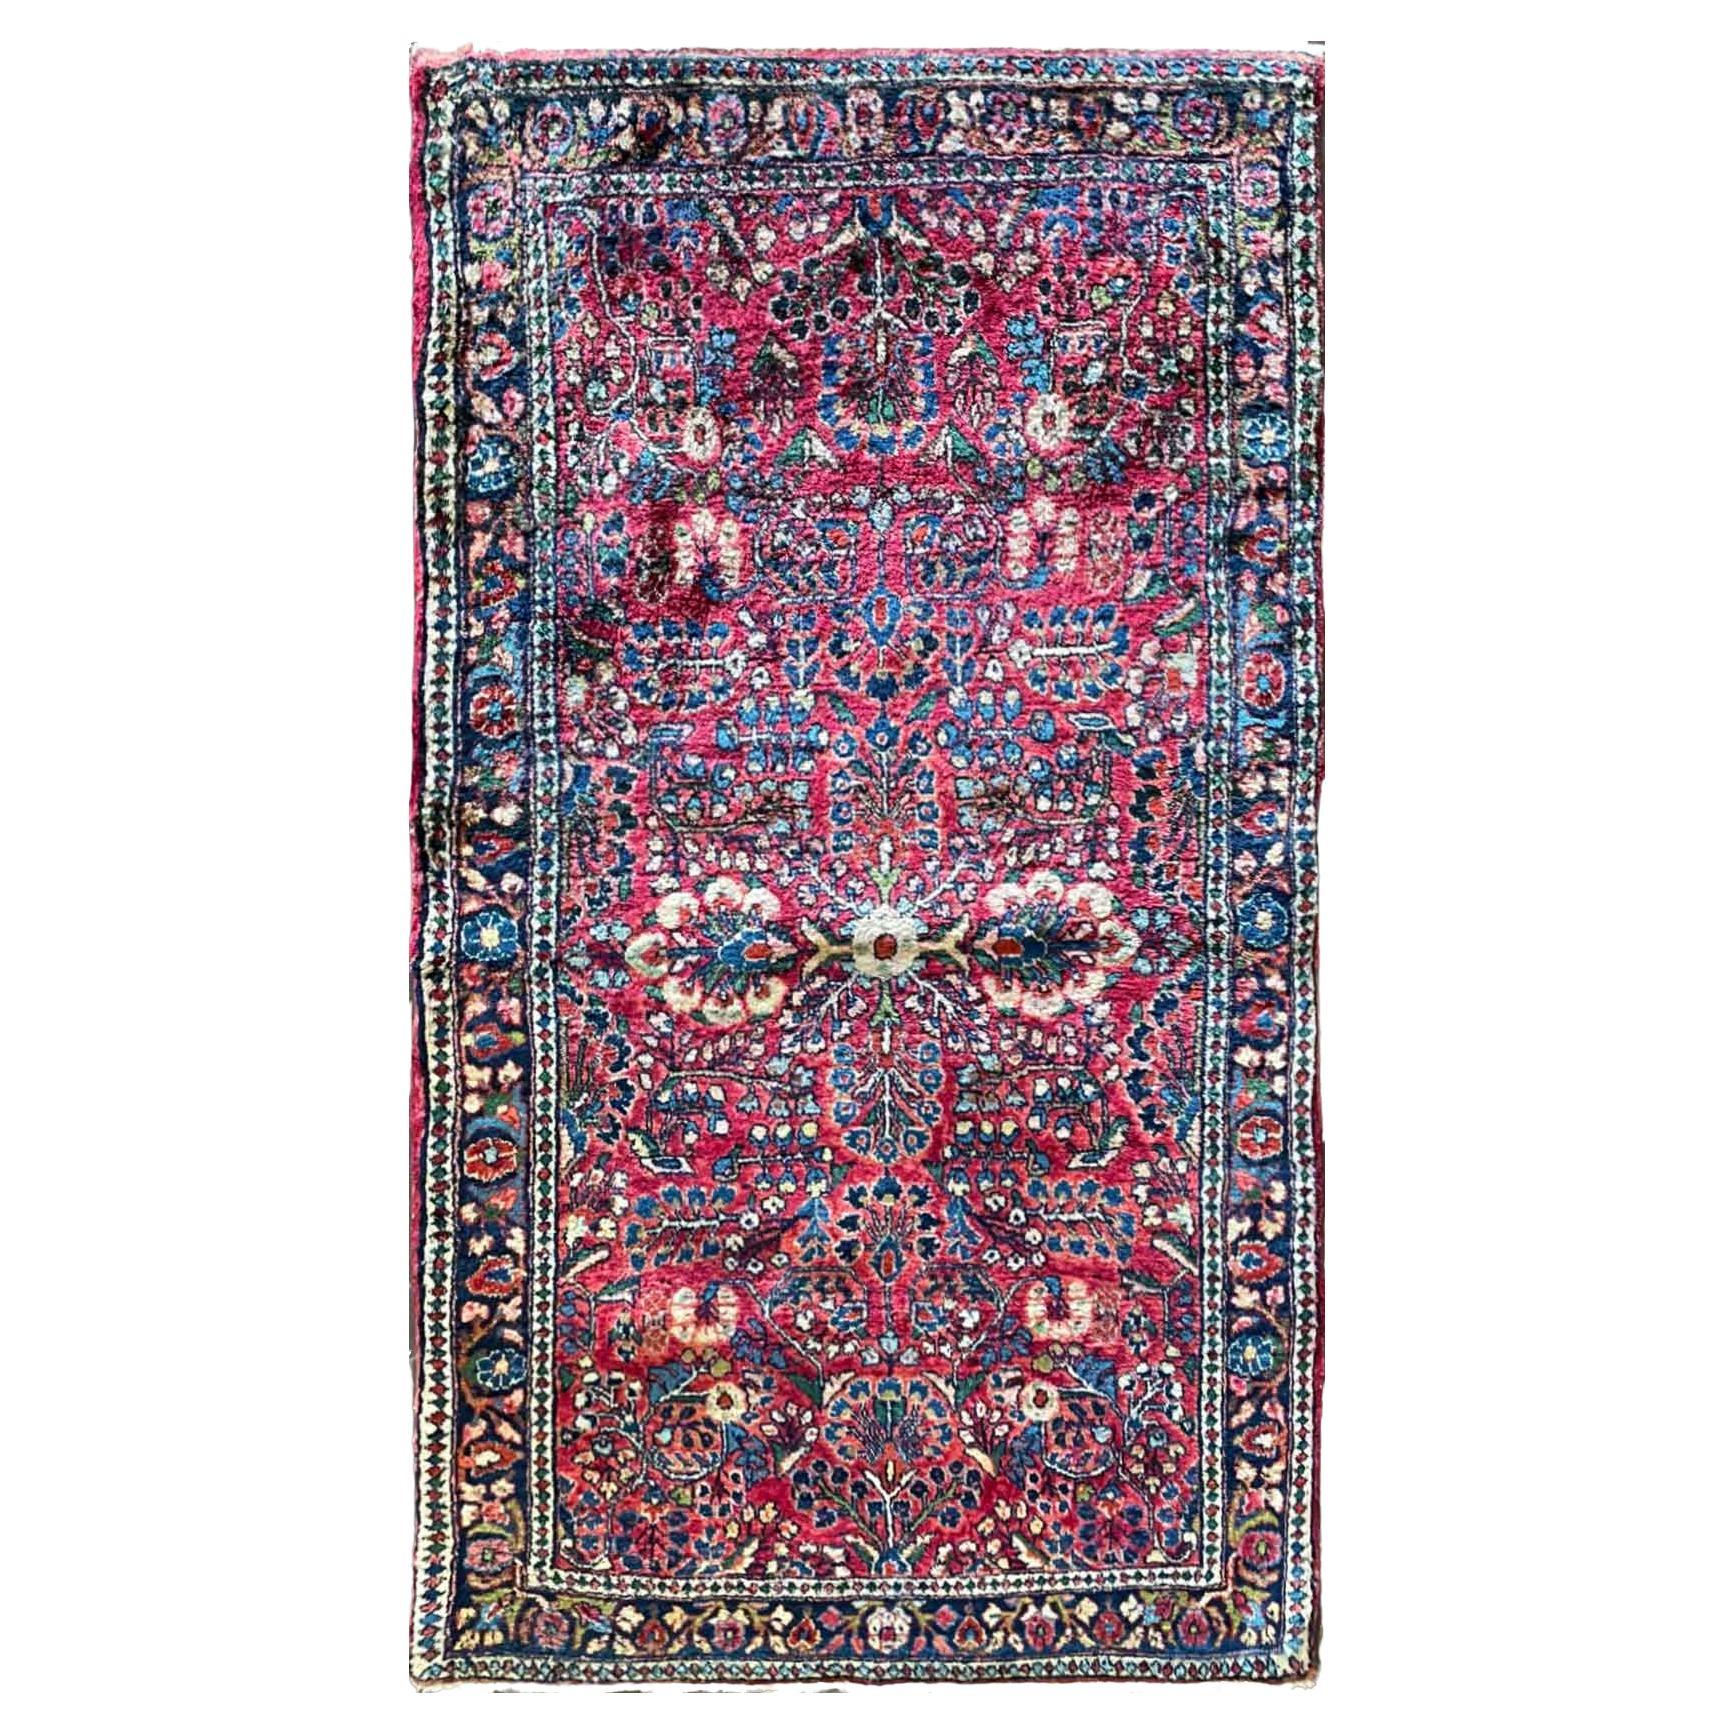 Antique Persian Sarouk Rug, c-1920, 2'6" x 4'10"